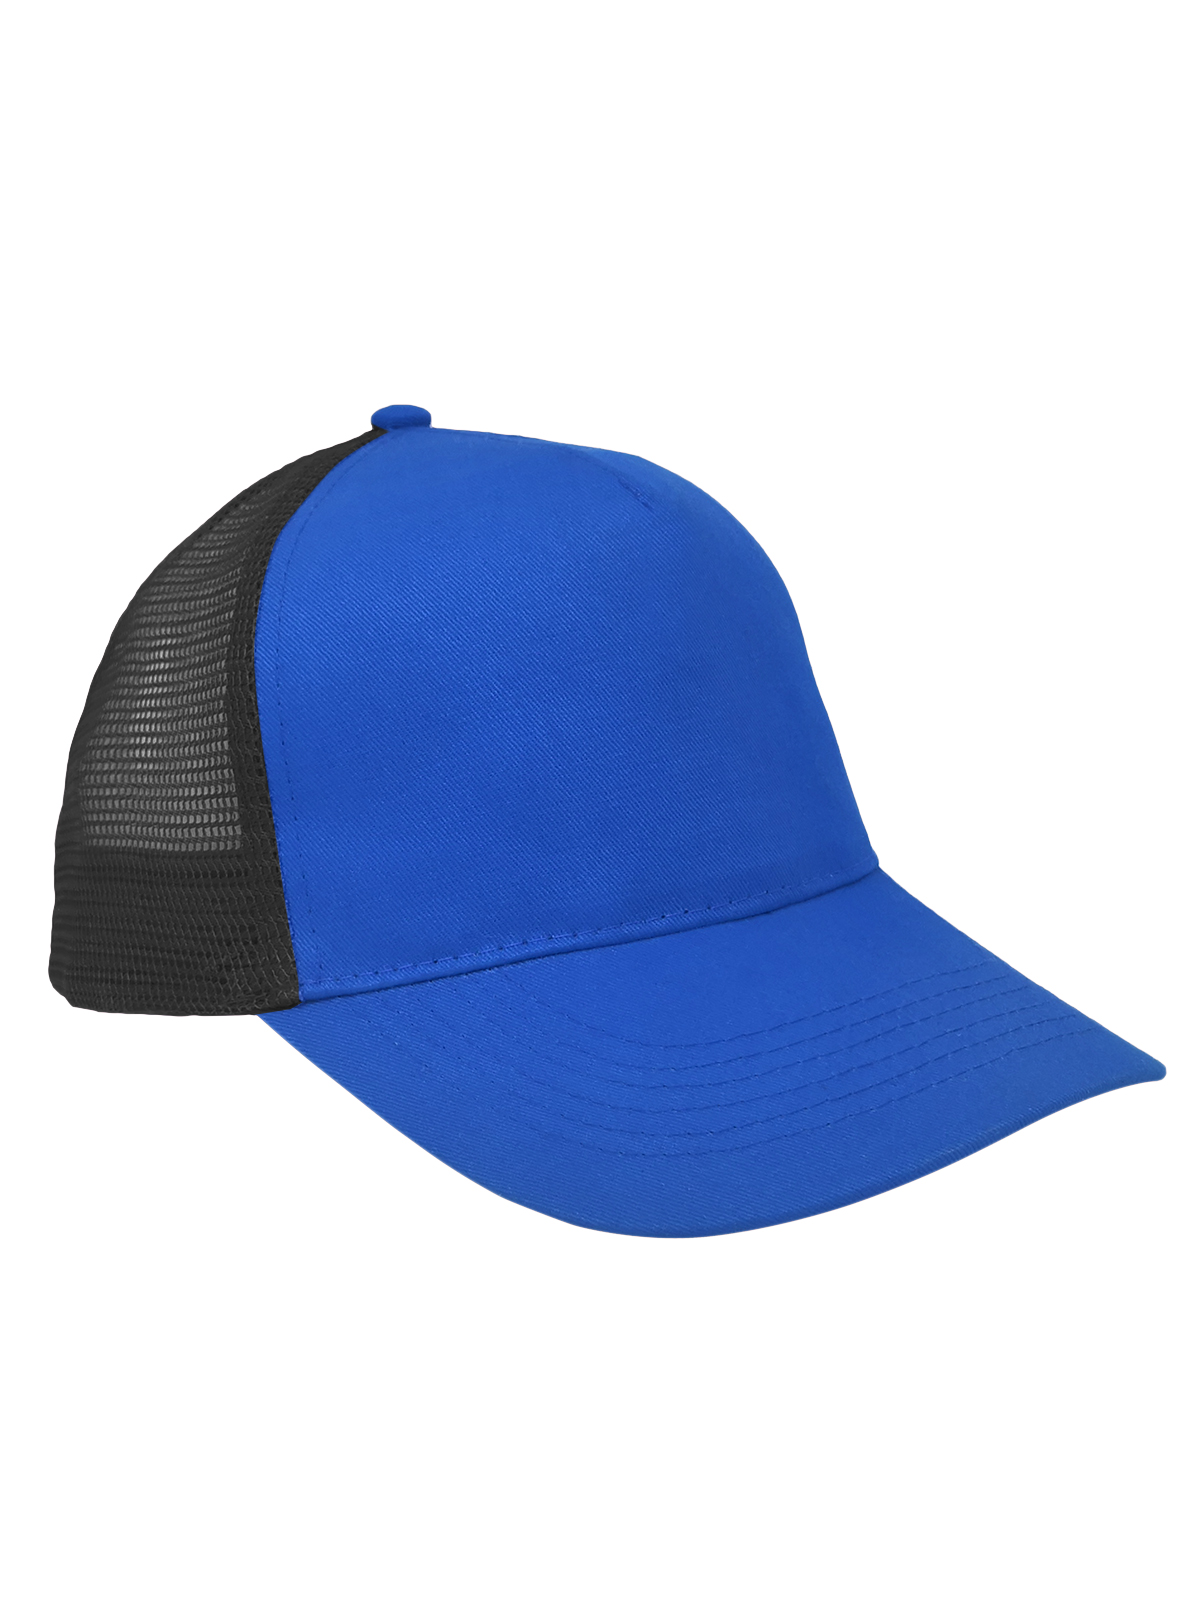 mesh-cotton-cap-royal-blue-black.webp